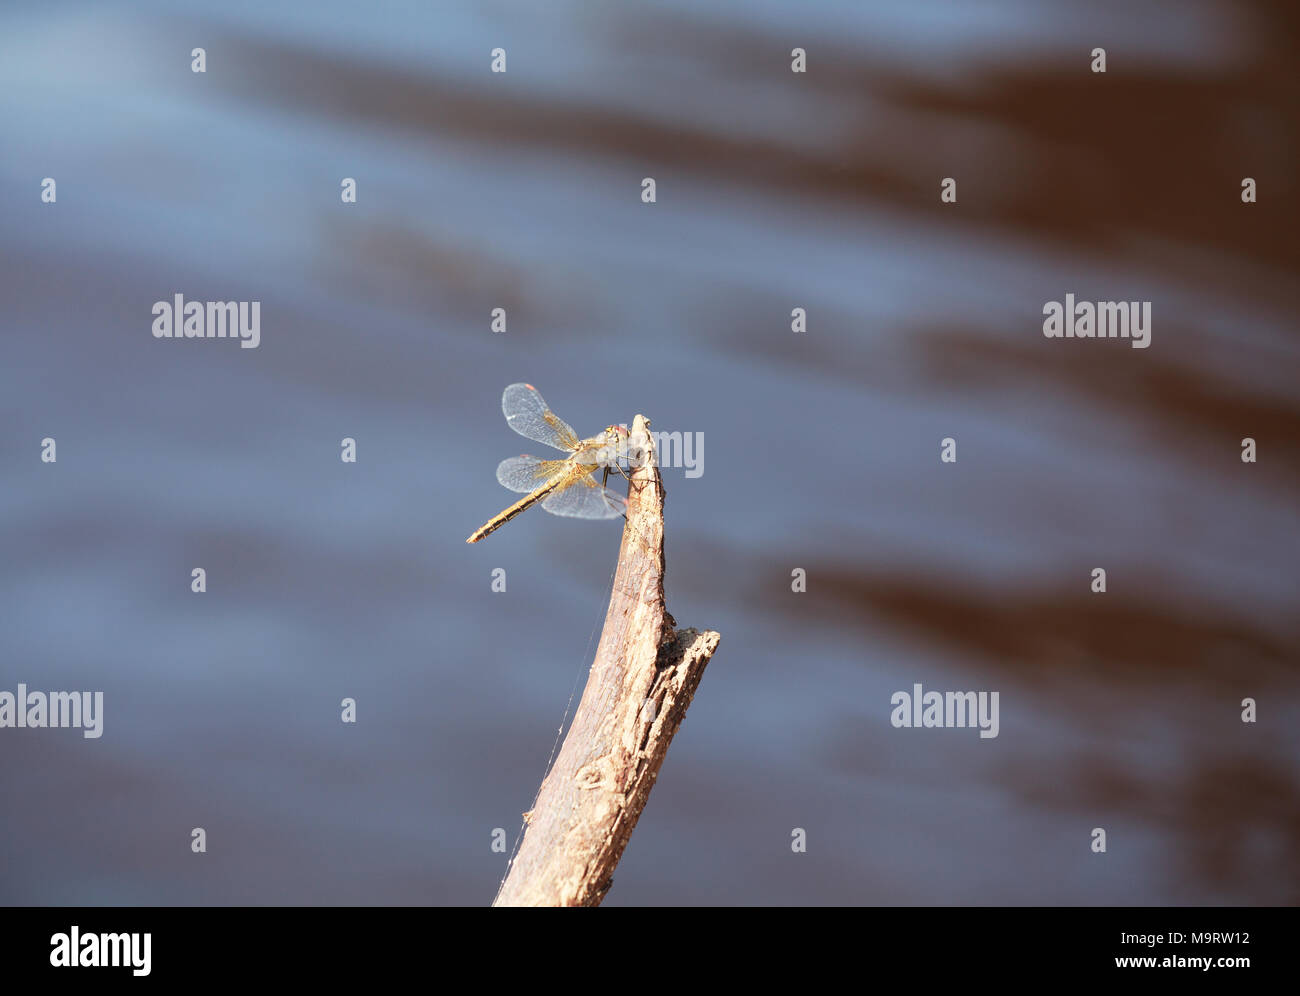 Brown dragonfly (Aeschna grandis) assis sur un vieil arbre, le minimalisme, selective focus et la place pour le texte Banque D'Images